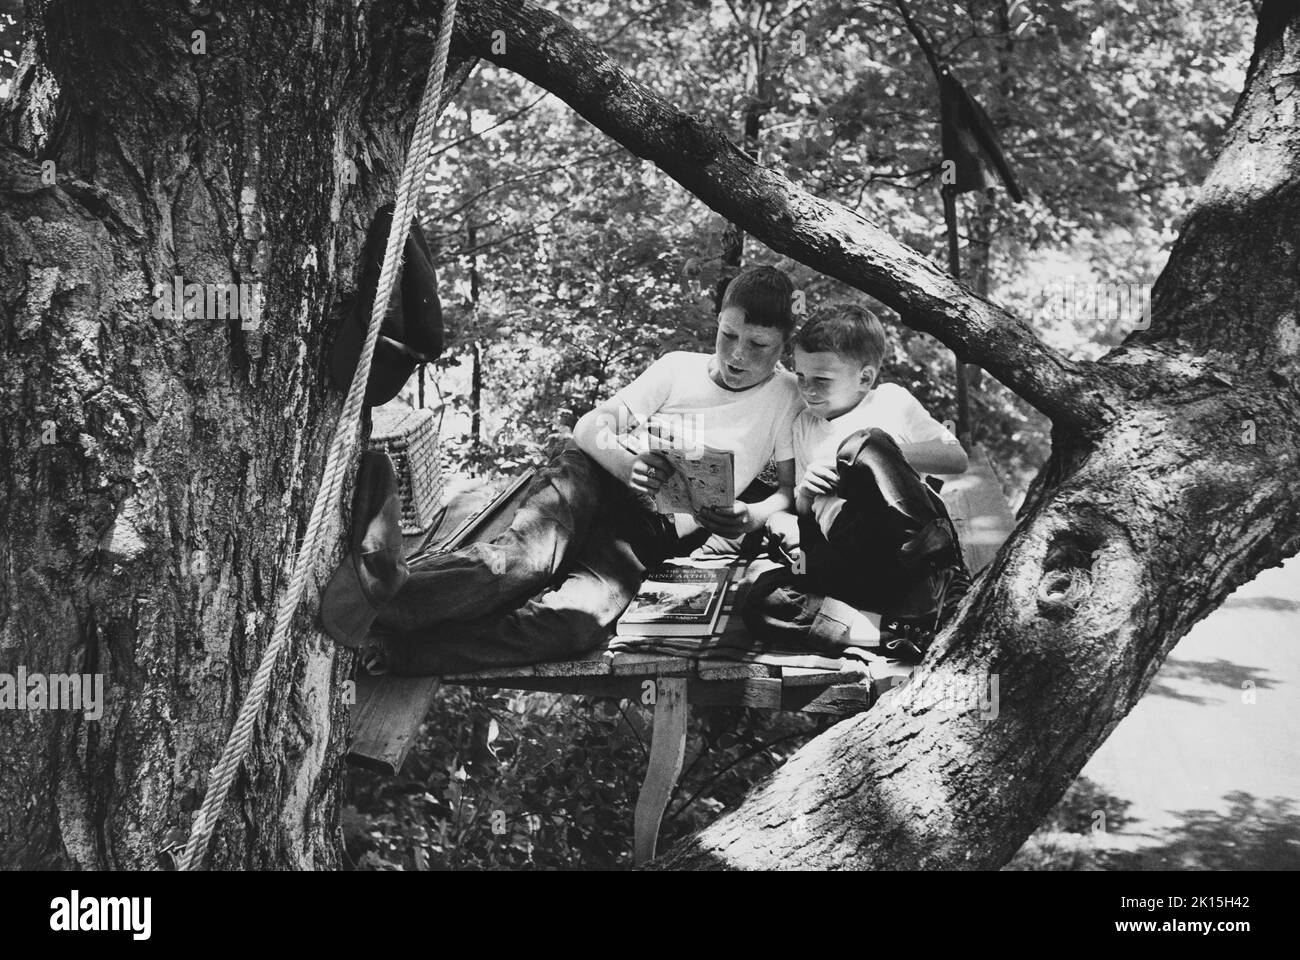 Zwei Brüder teilen die Freude, ein Comic zu lesen, während sie in ihrer Baumfestung abhängen. Auf dem Boden der Festung ist eine Hardcover-Kopie von König Arthur zu sehen. Stockfoto